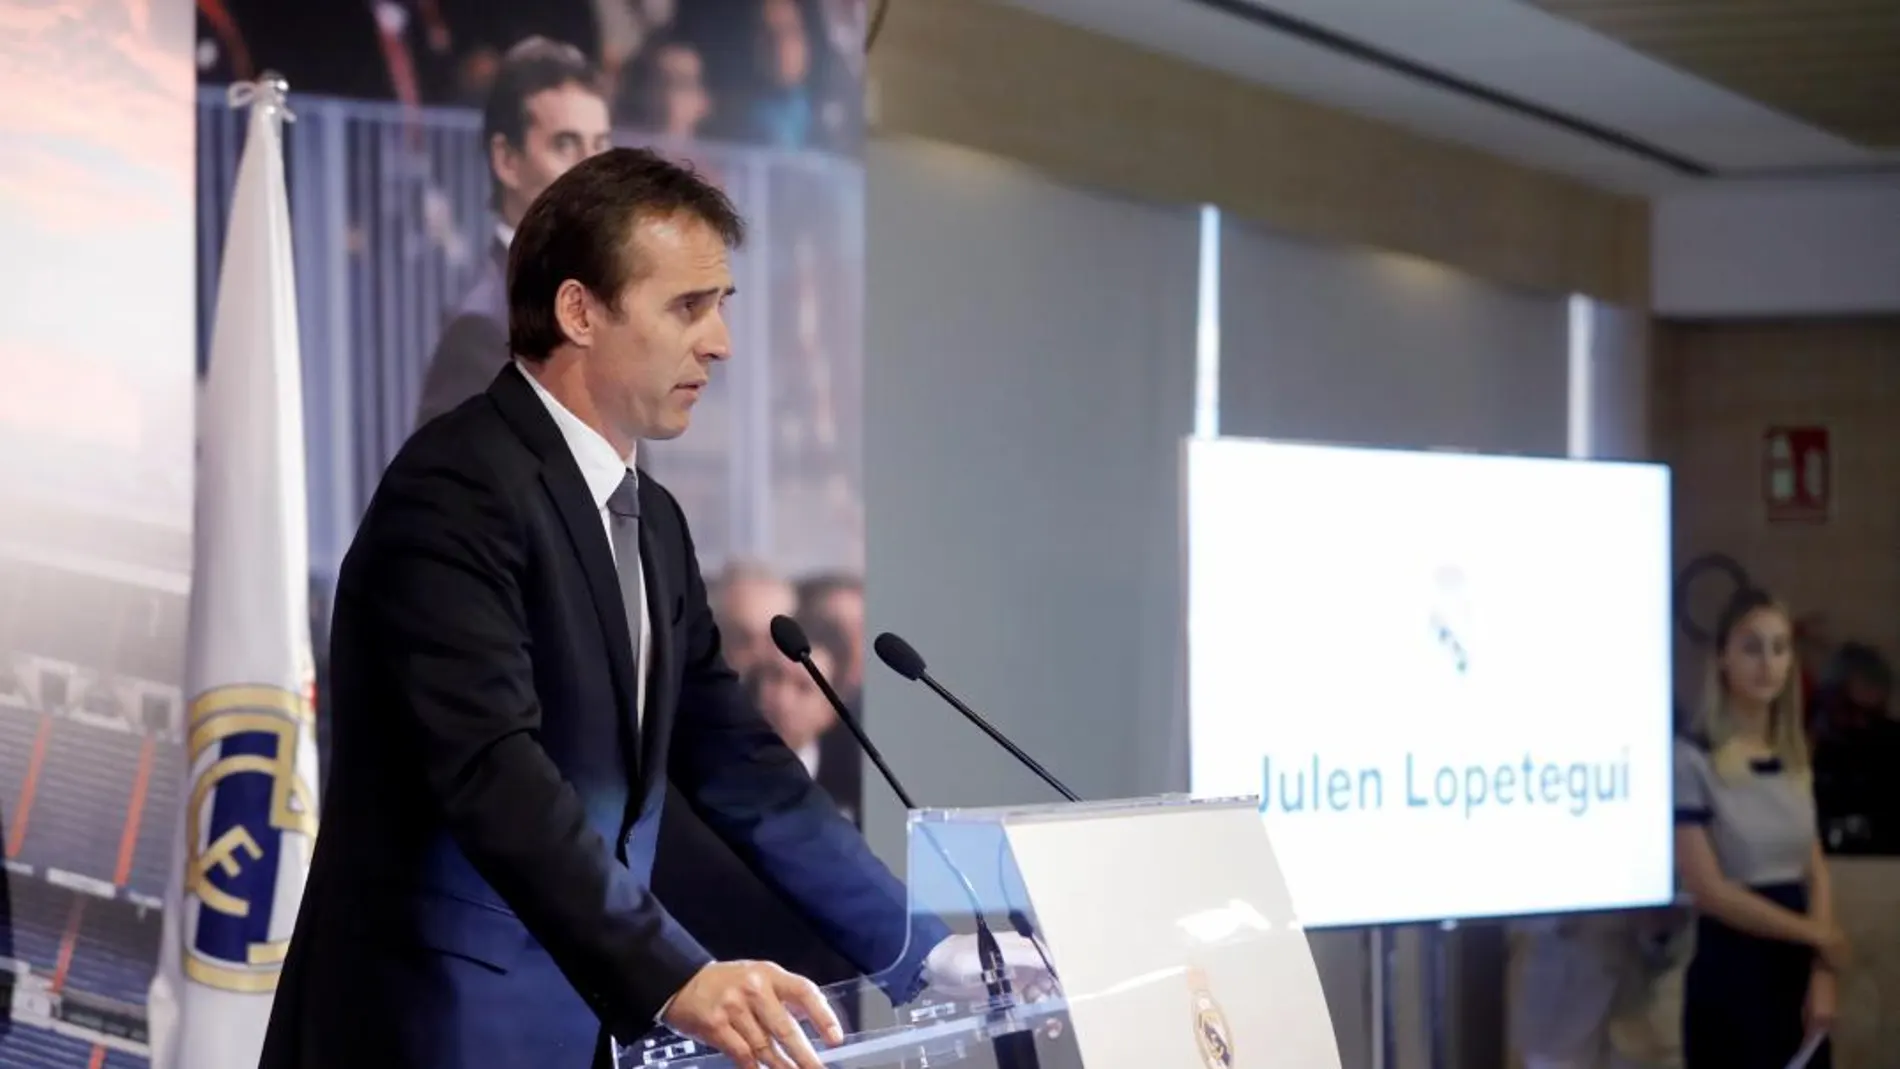 El exseleccionador español de fútbol Julen Lopetegui durante su intervención en su presentación oficial como entrenador del Real Madrid. EFE/JuanJo Martín